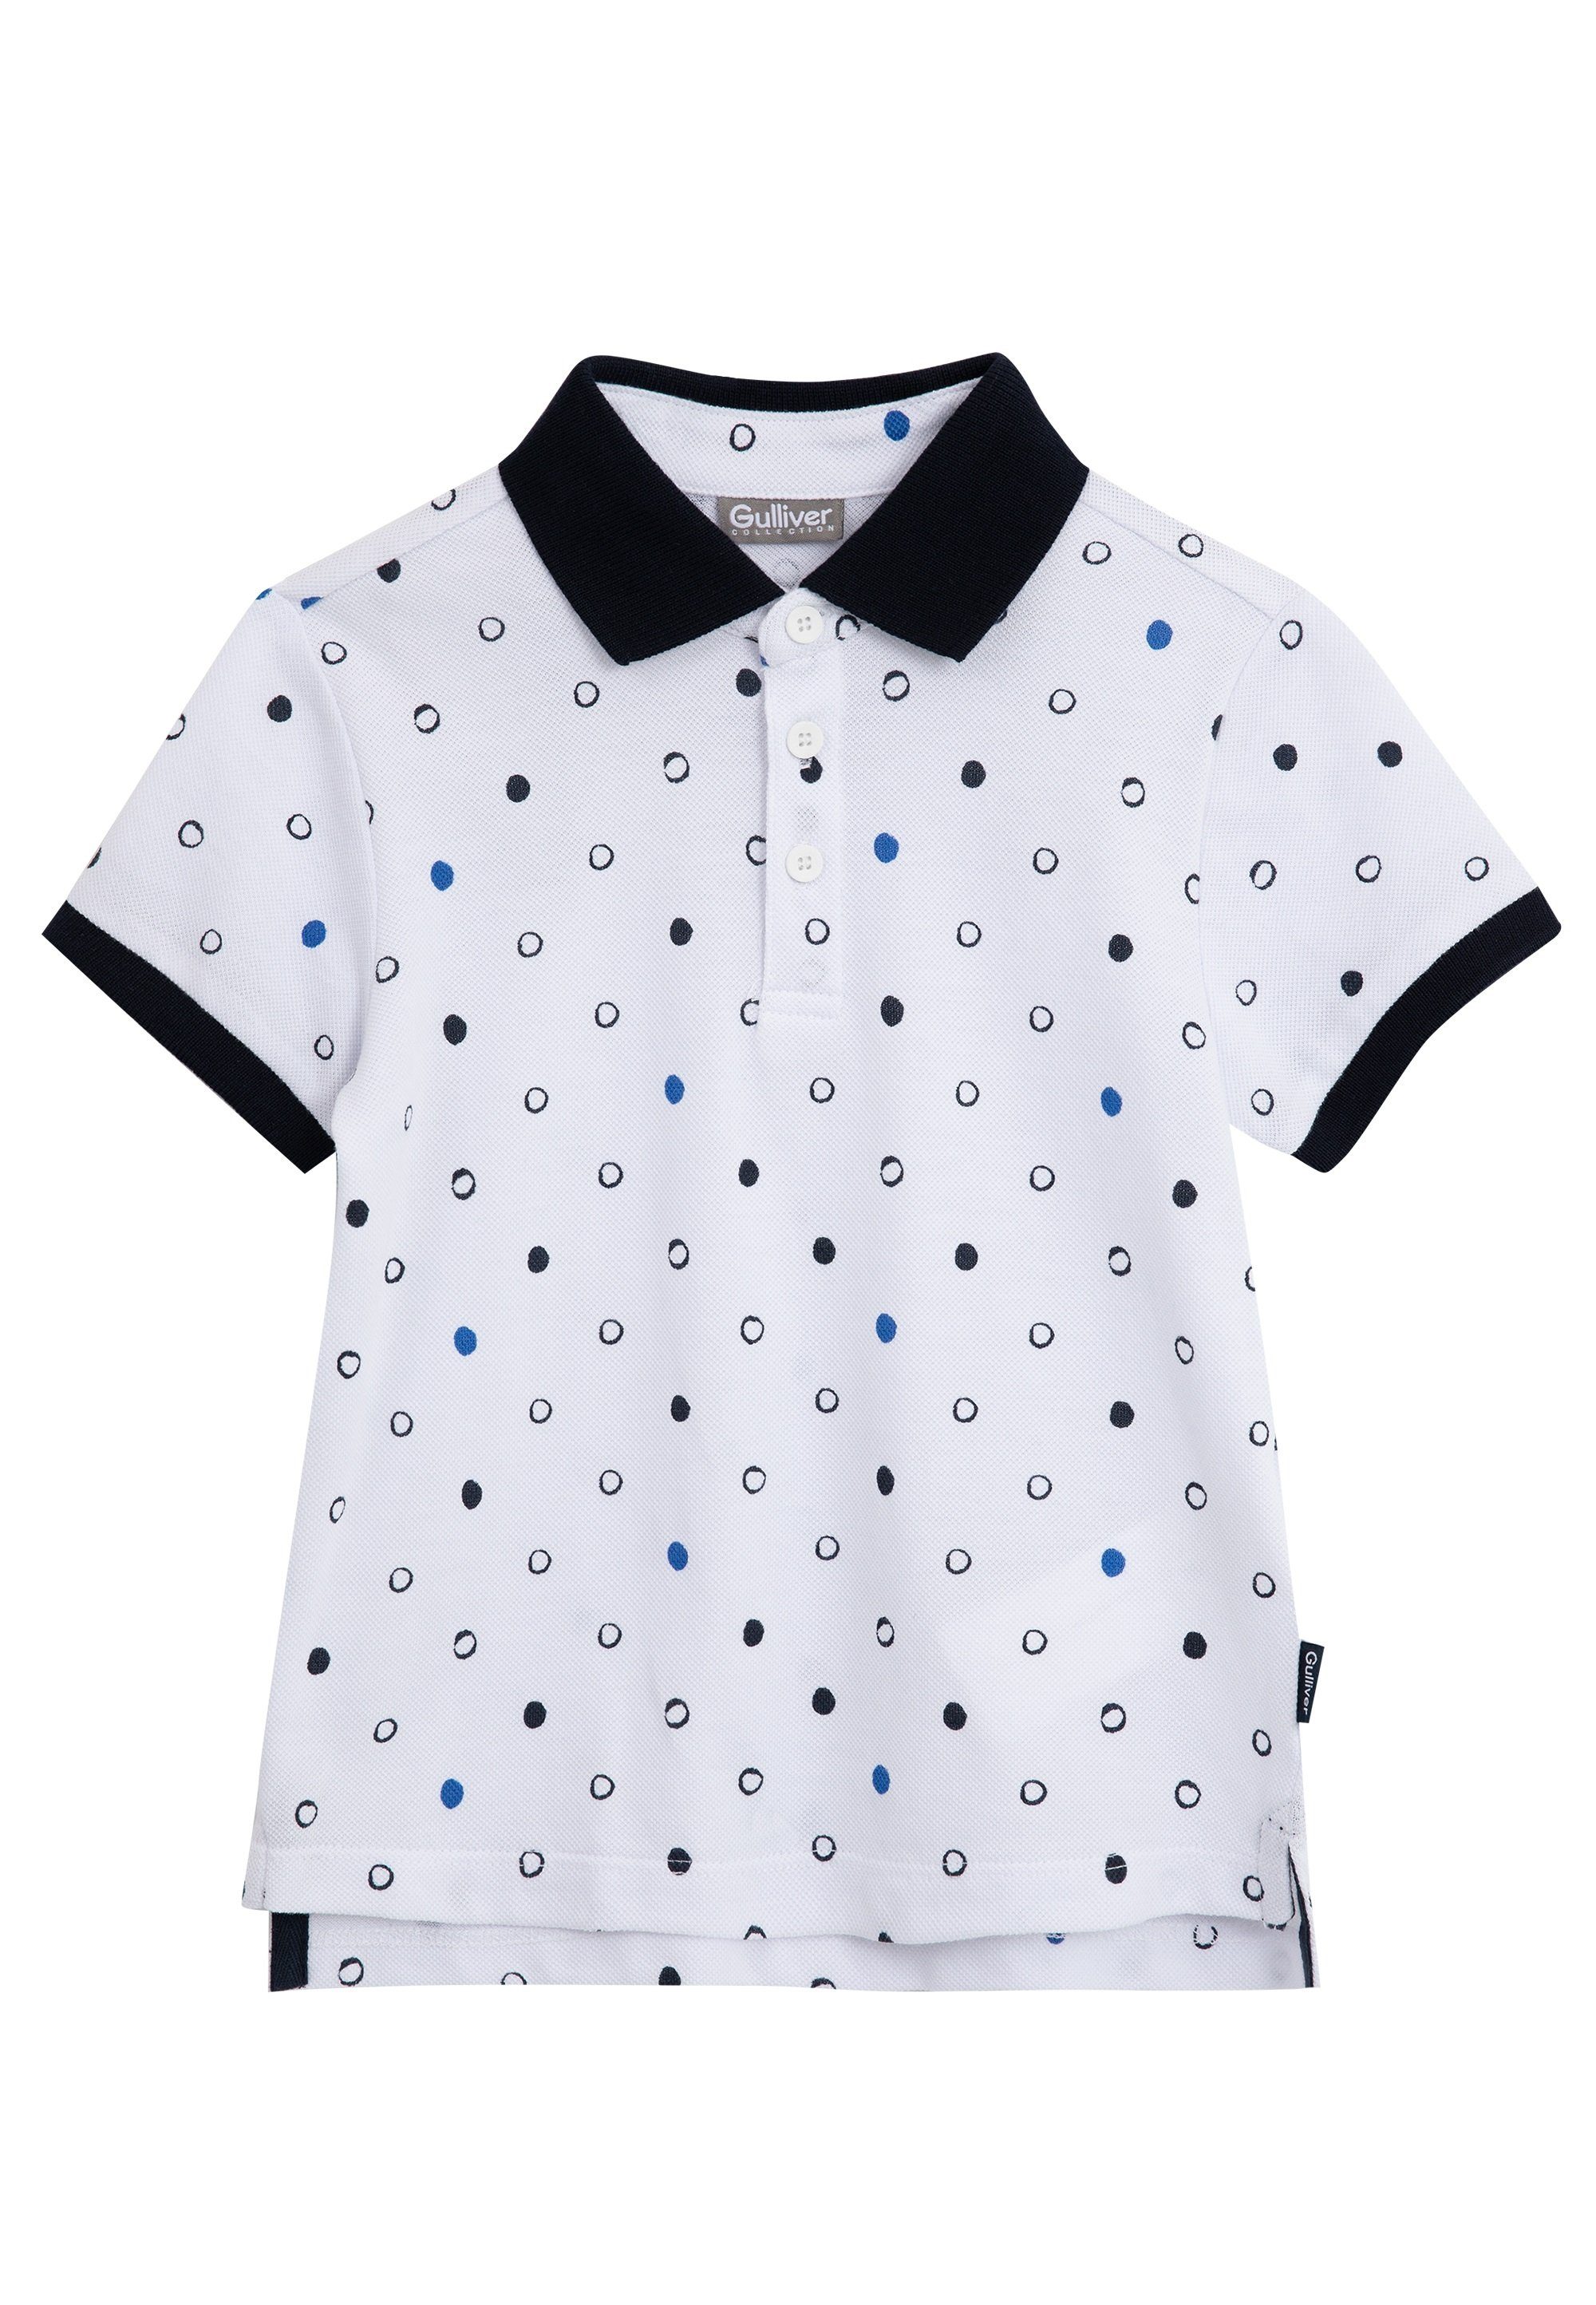 Gulliver Poloshirt mit verlängerter Rückenpartie, Aus reiner und  hochwertiger Baumwolle gefertigt | Poloshirts